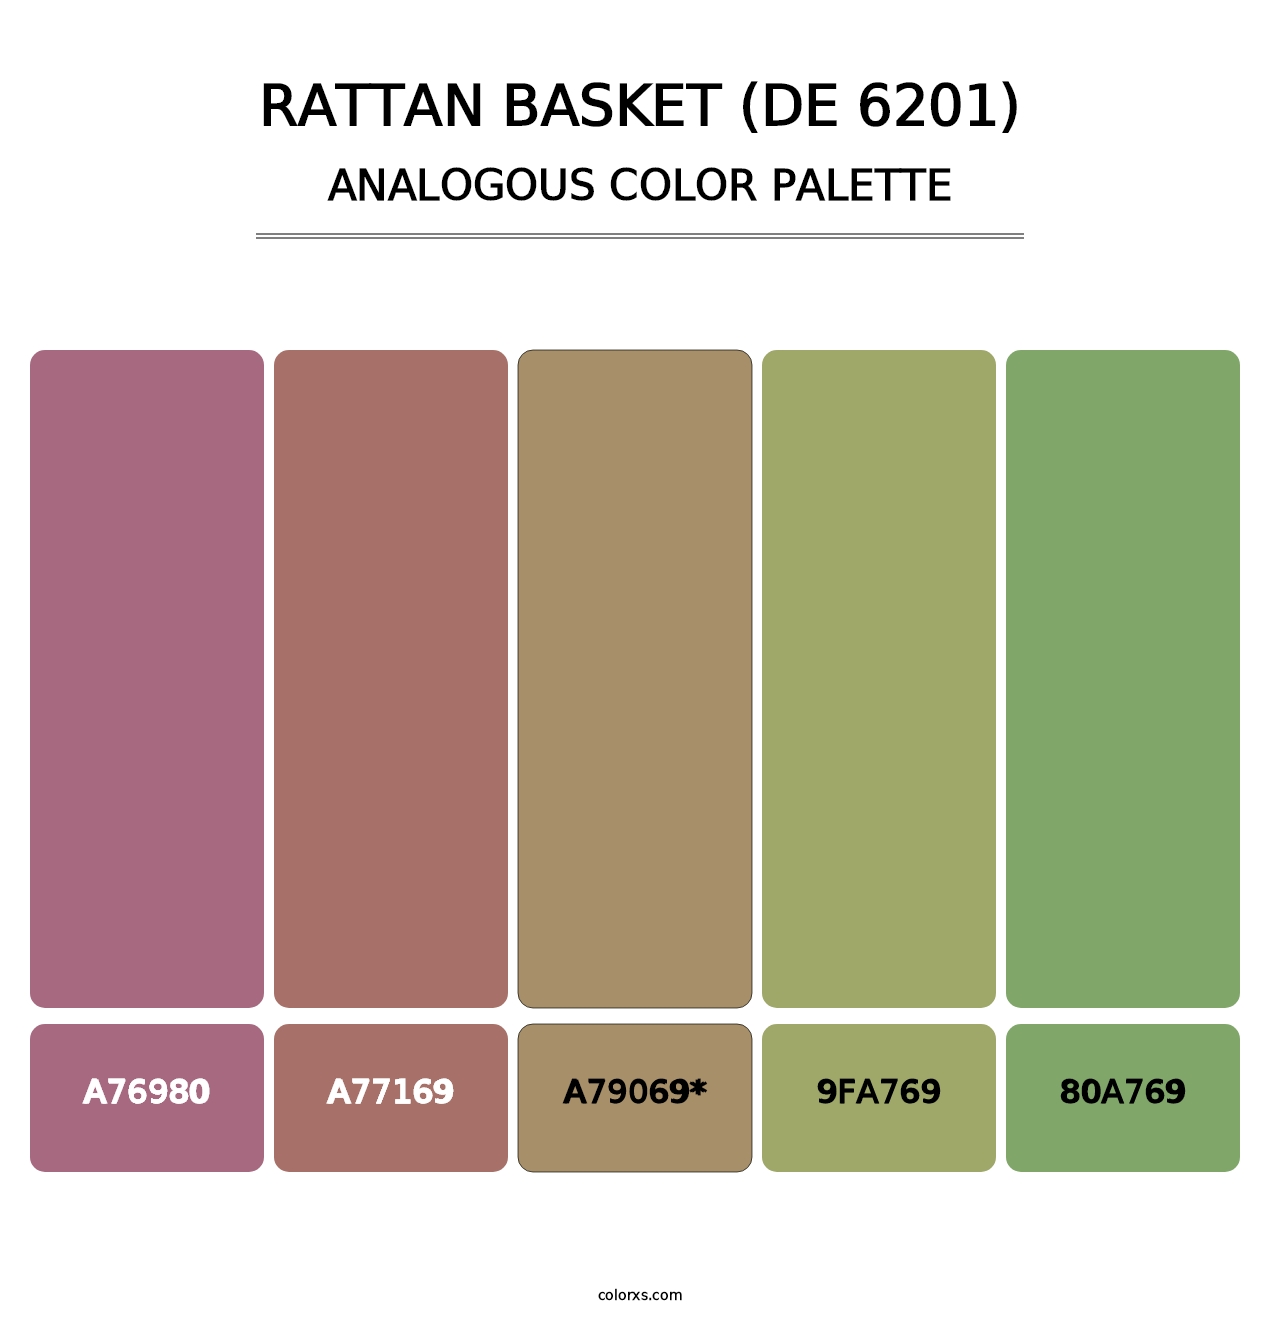 Rattan Basket (DE 6201) - Analogous Color Palette